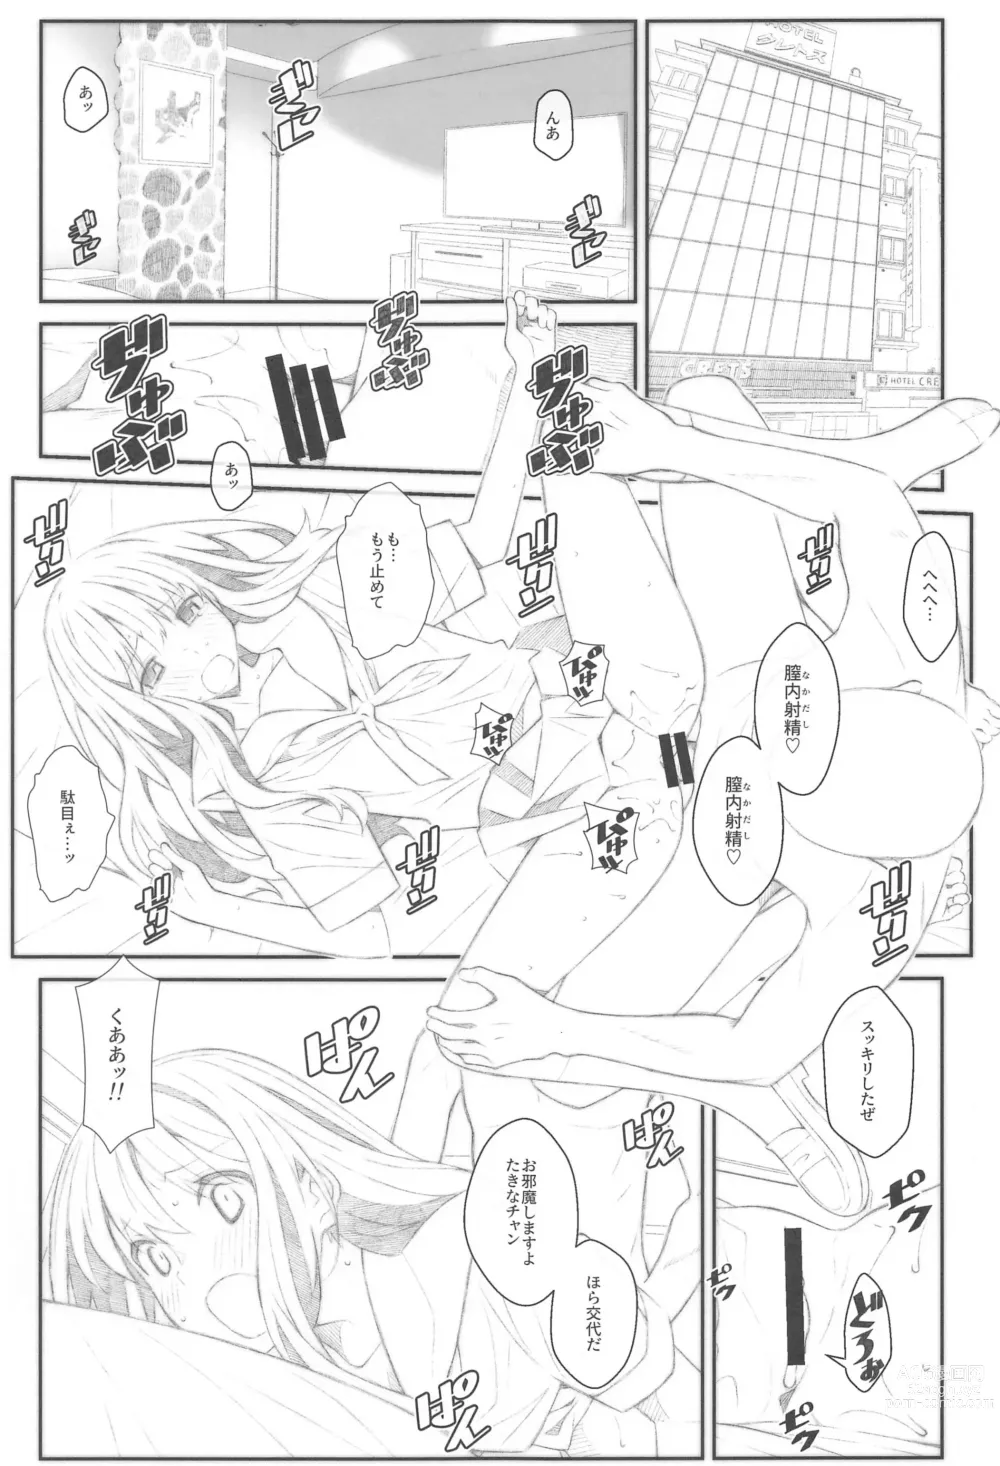 Page 2 of doujinshi TYPE-68b